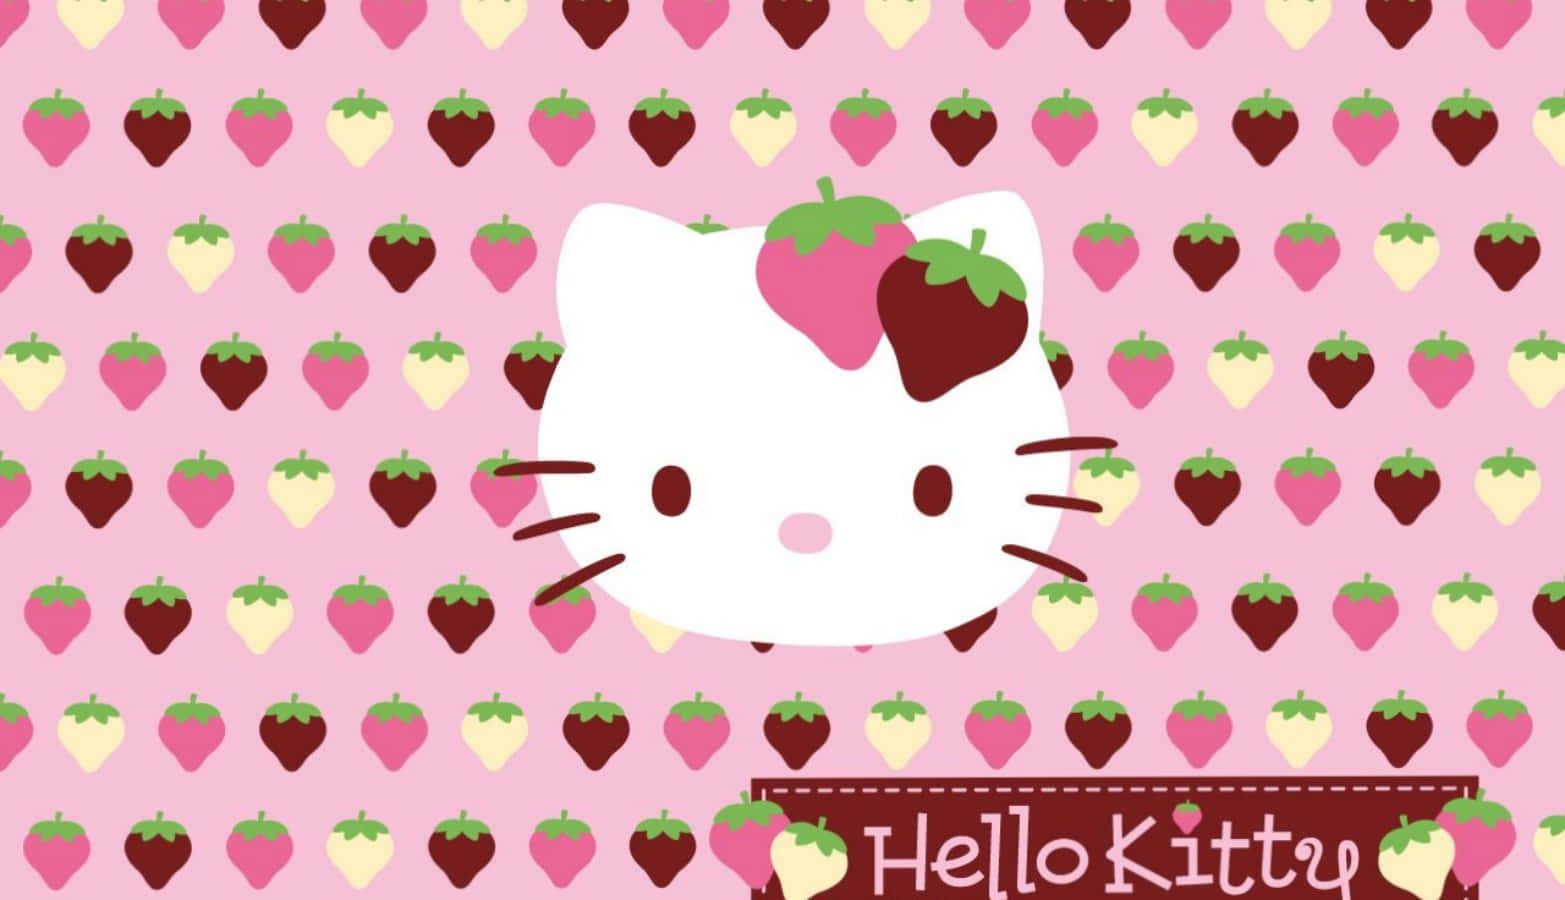 Förbereddig För Skolan Med En Rolig Och Funktionell Hello Kitty-dator! Wallpaper